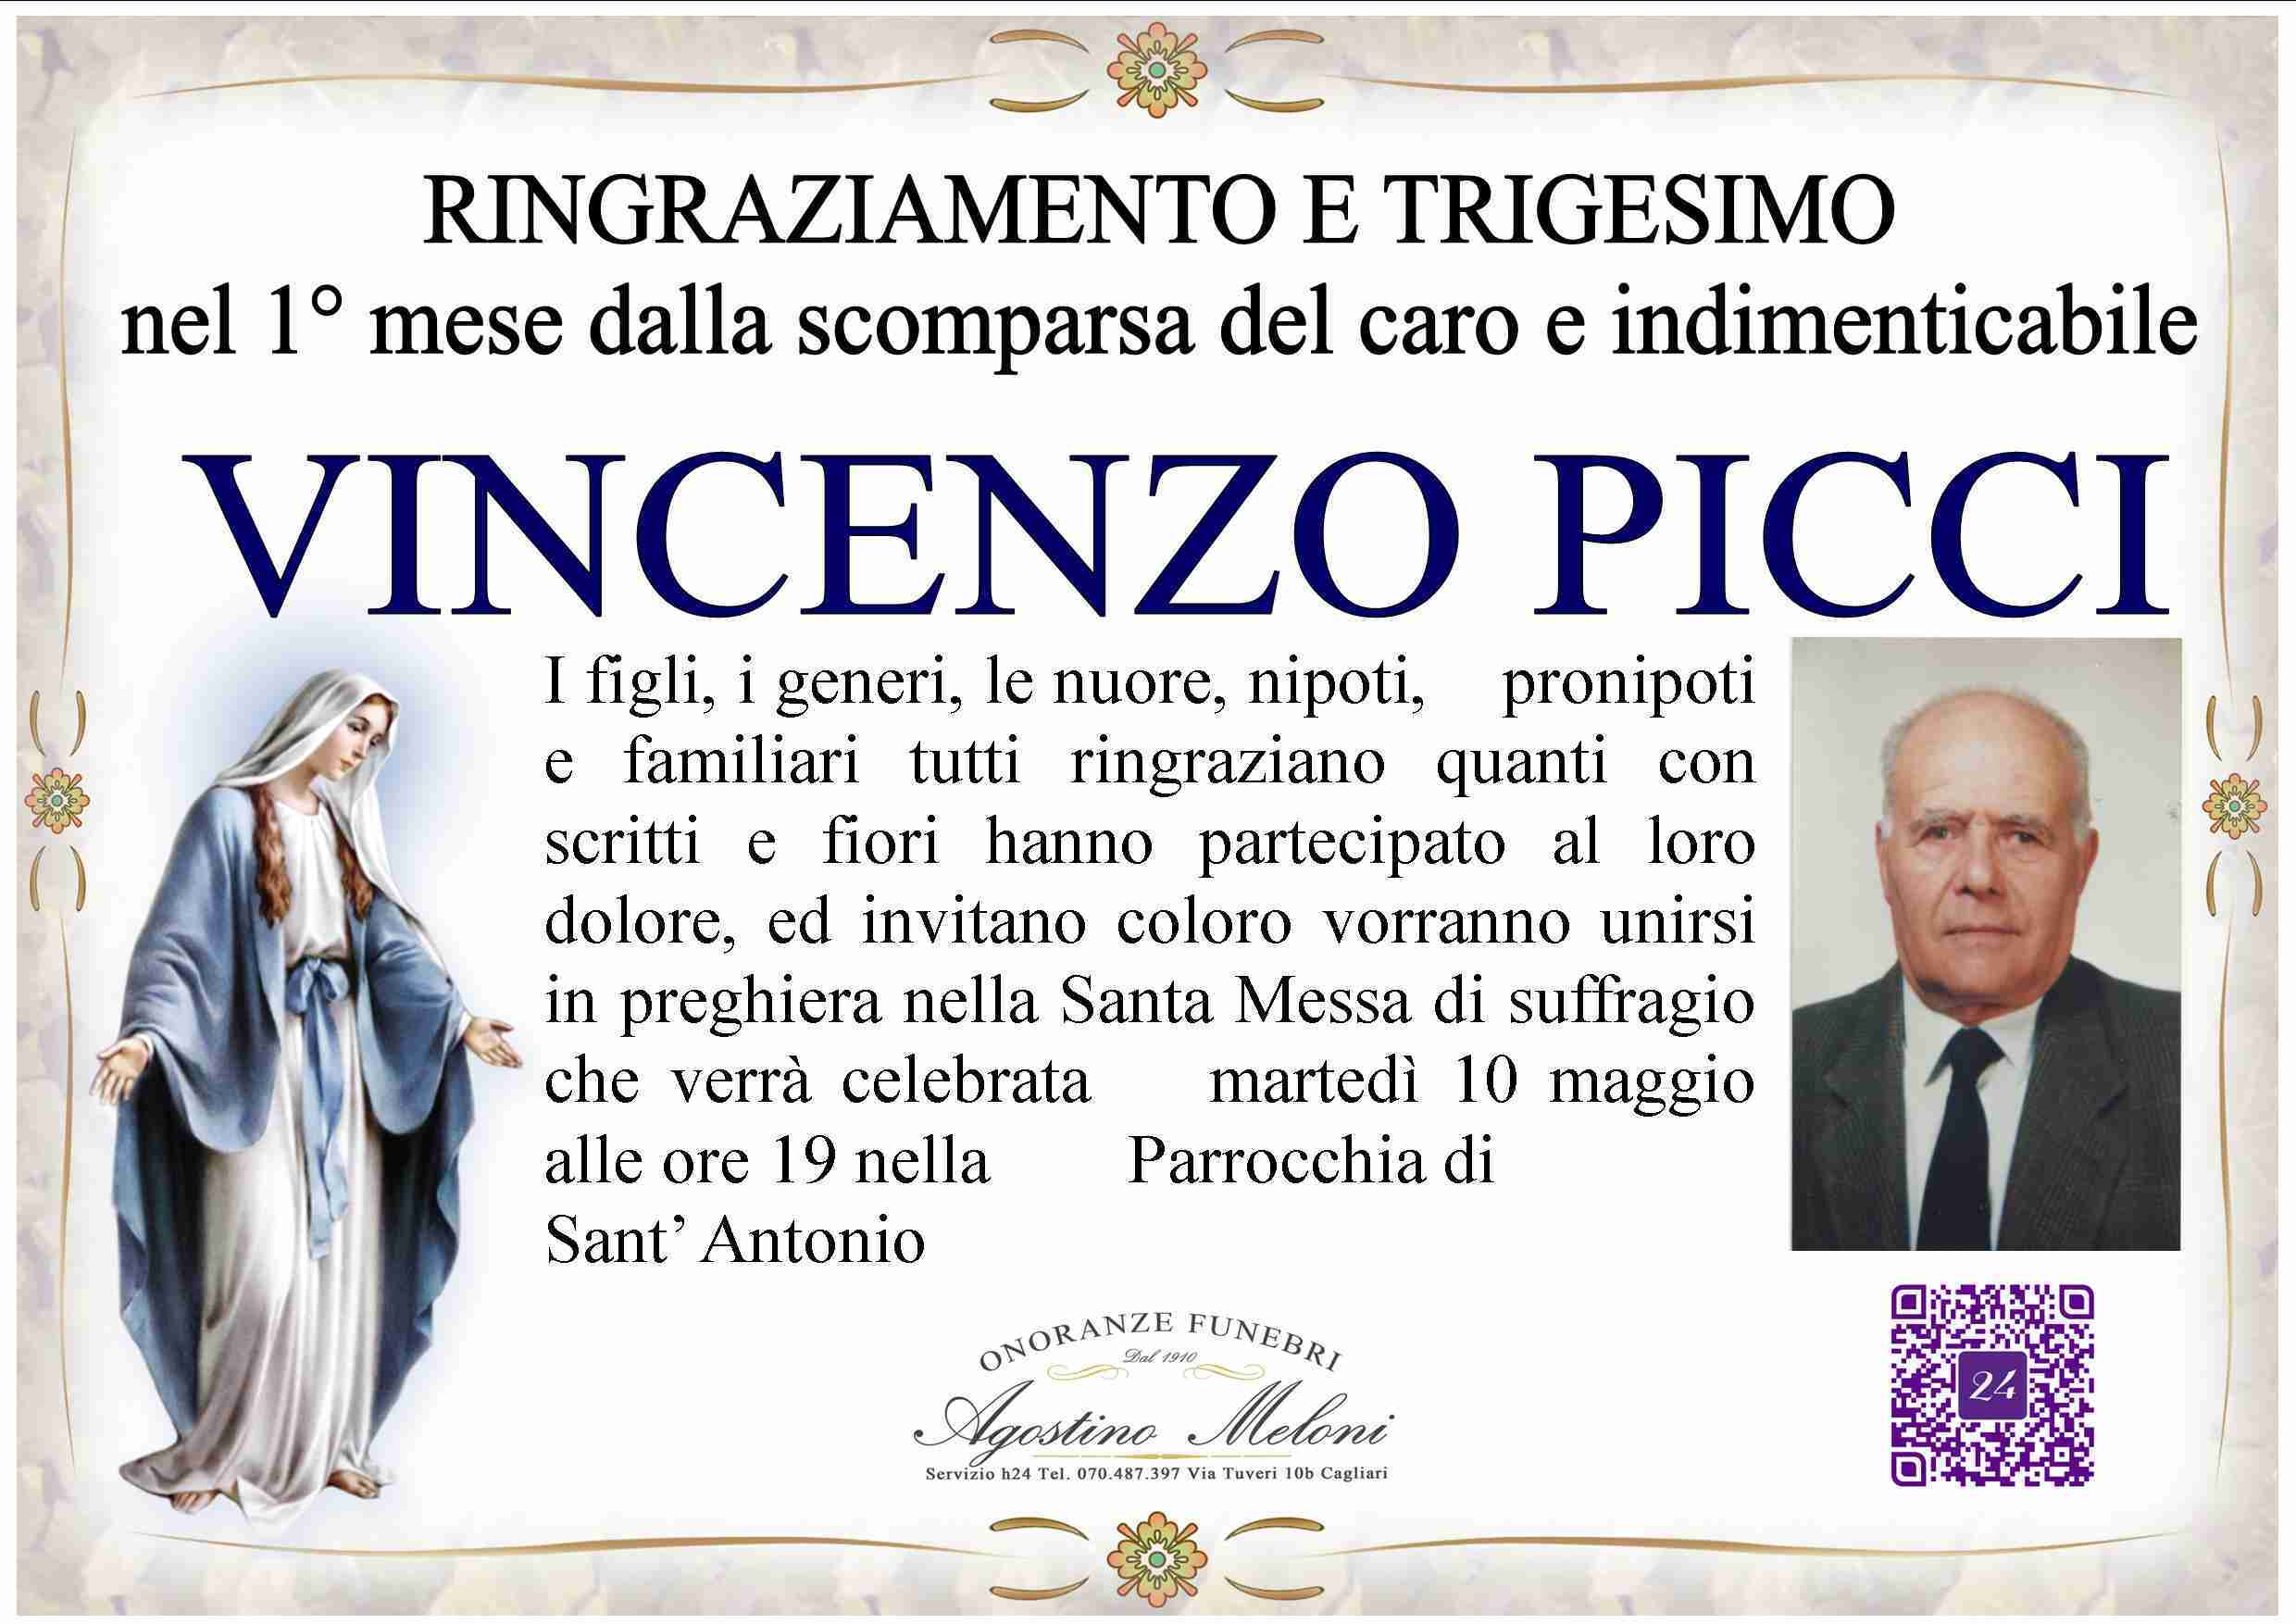 Vincenzo Picci